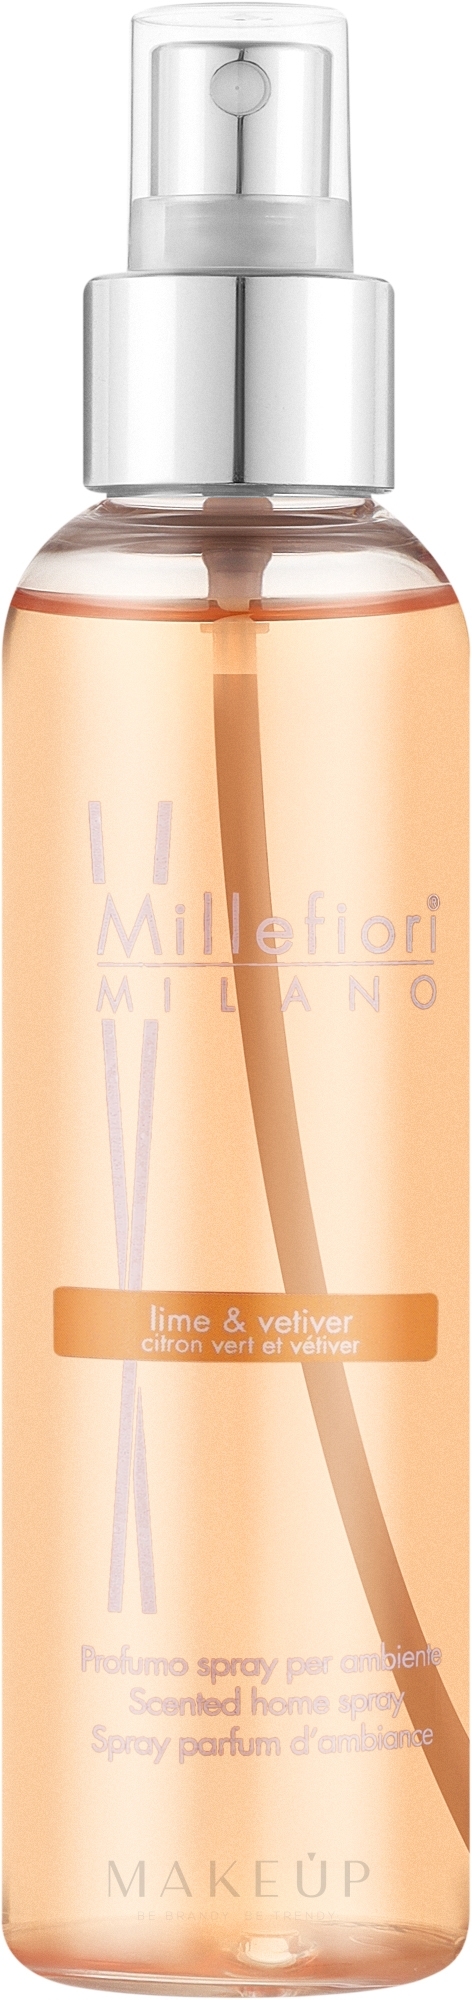 Raumspray Limette und Vetiver - Millefiori Milano Natural Lime & Vetiver Home Spray — Bild 150 ml